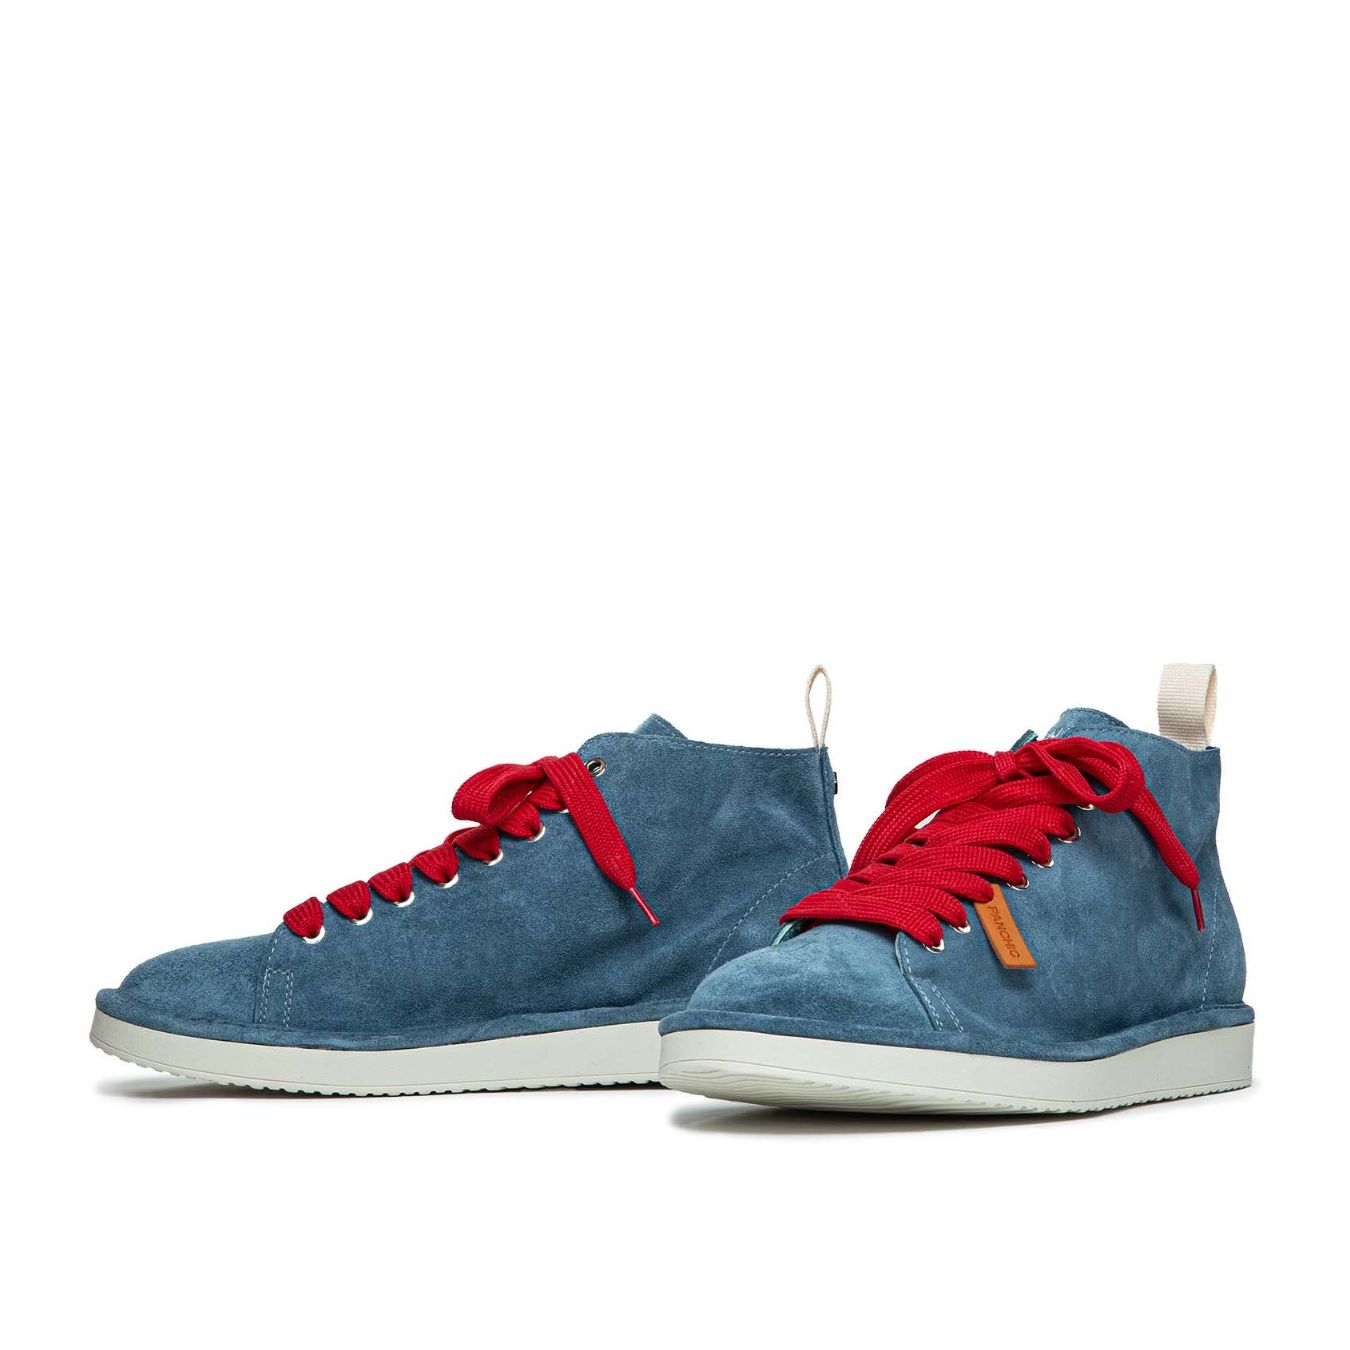 panchic uomo sneakers caviglia azzurro lacci rossi 